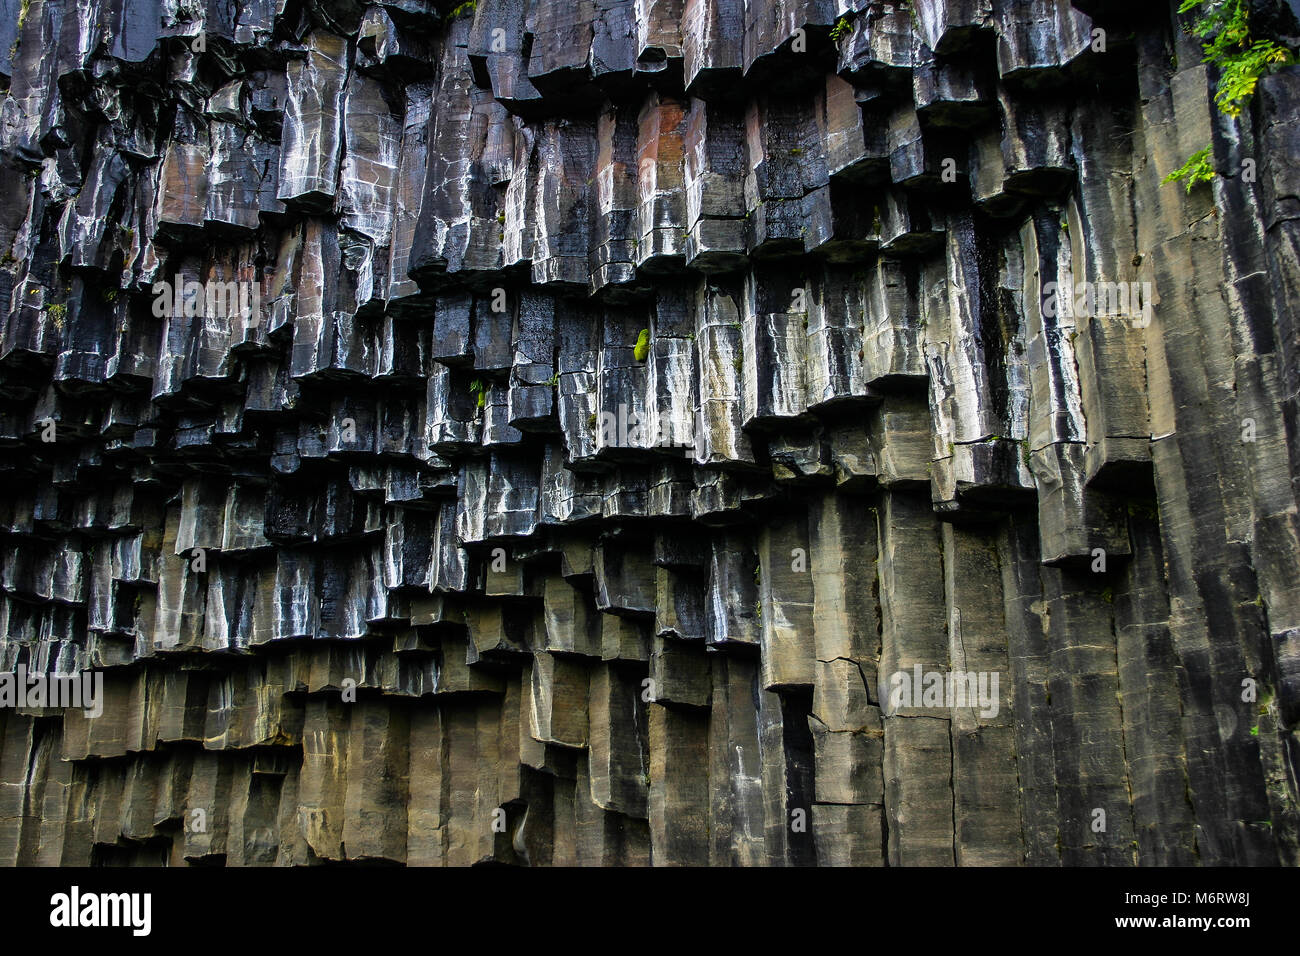 Svartifoss cascata in Islanda esagonale di rocce nere guardando come organo a canne Der Dettifoss, übersetzt der "stürzende Wasserfall", ist mit einer Brei Foto Stock